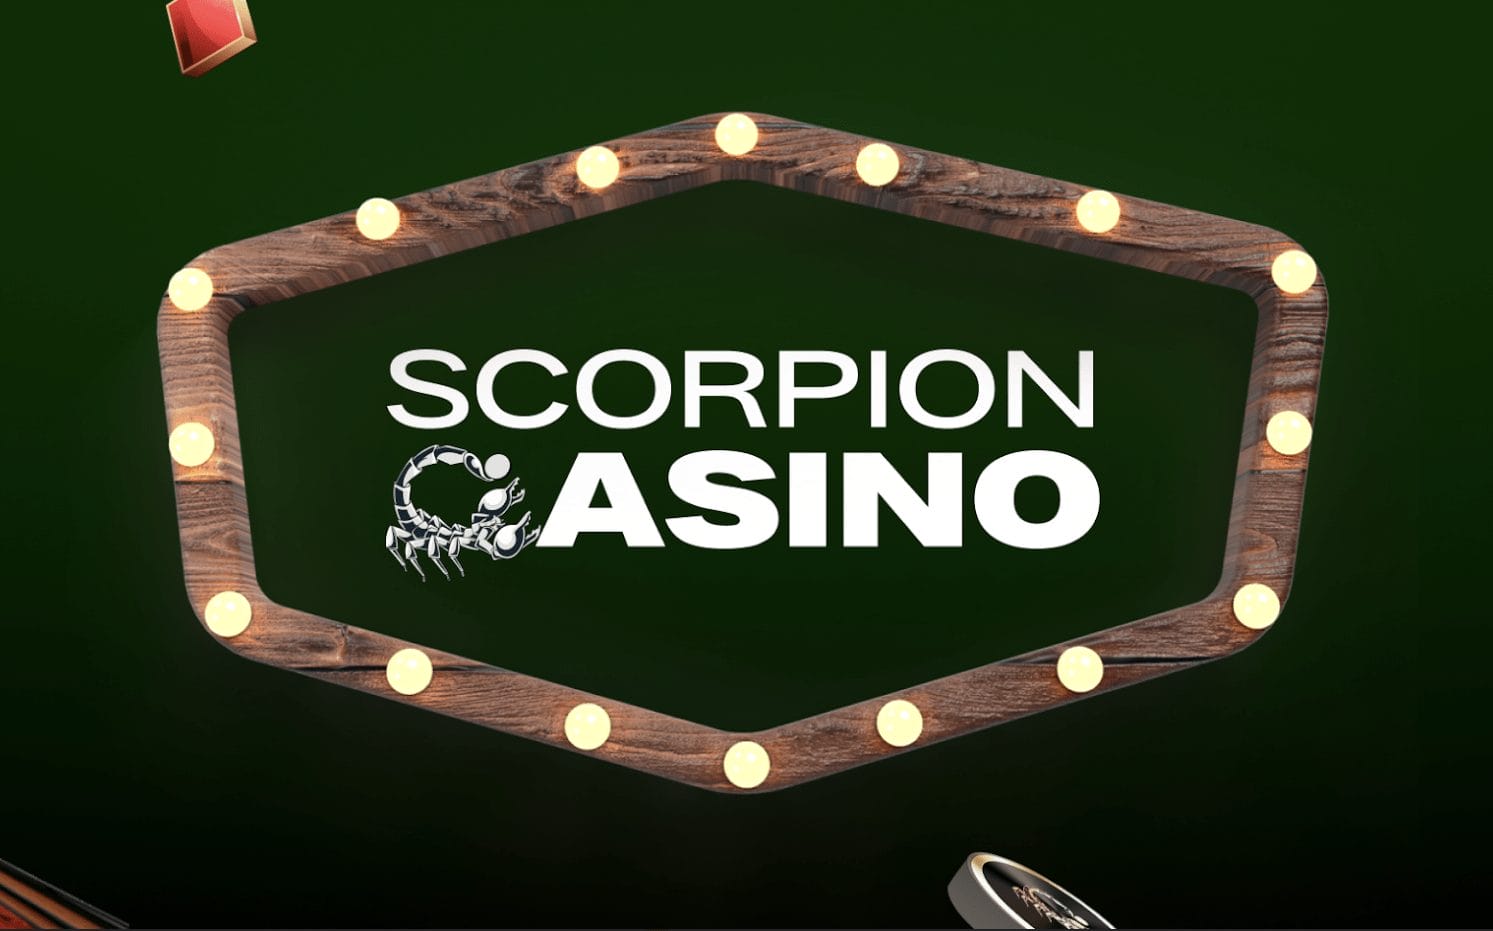 Scorpion Casino PinkSale partner ufficiale per il lancio